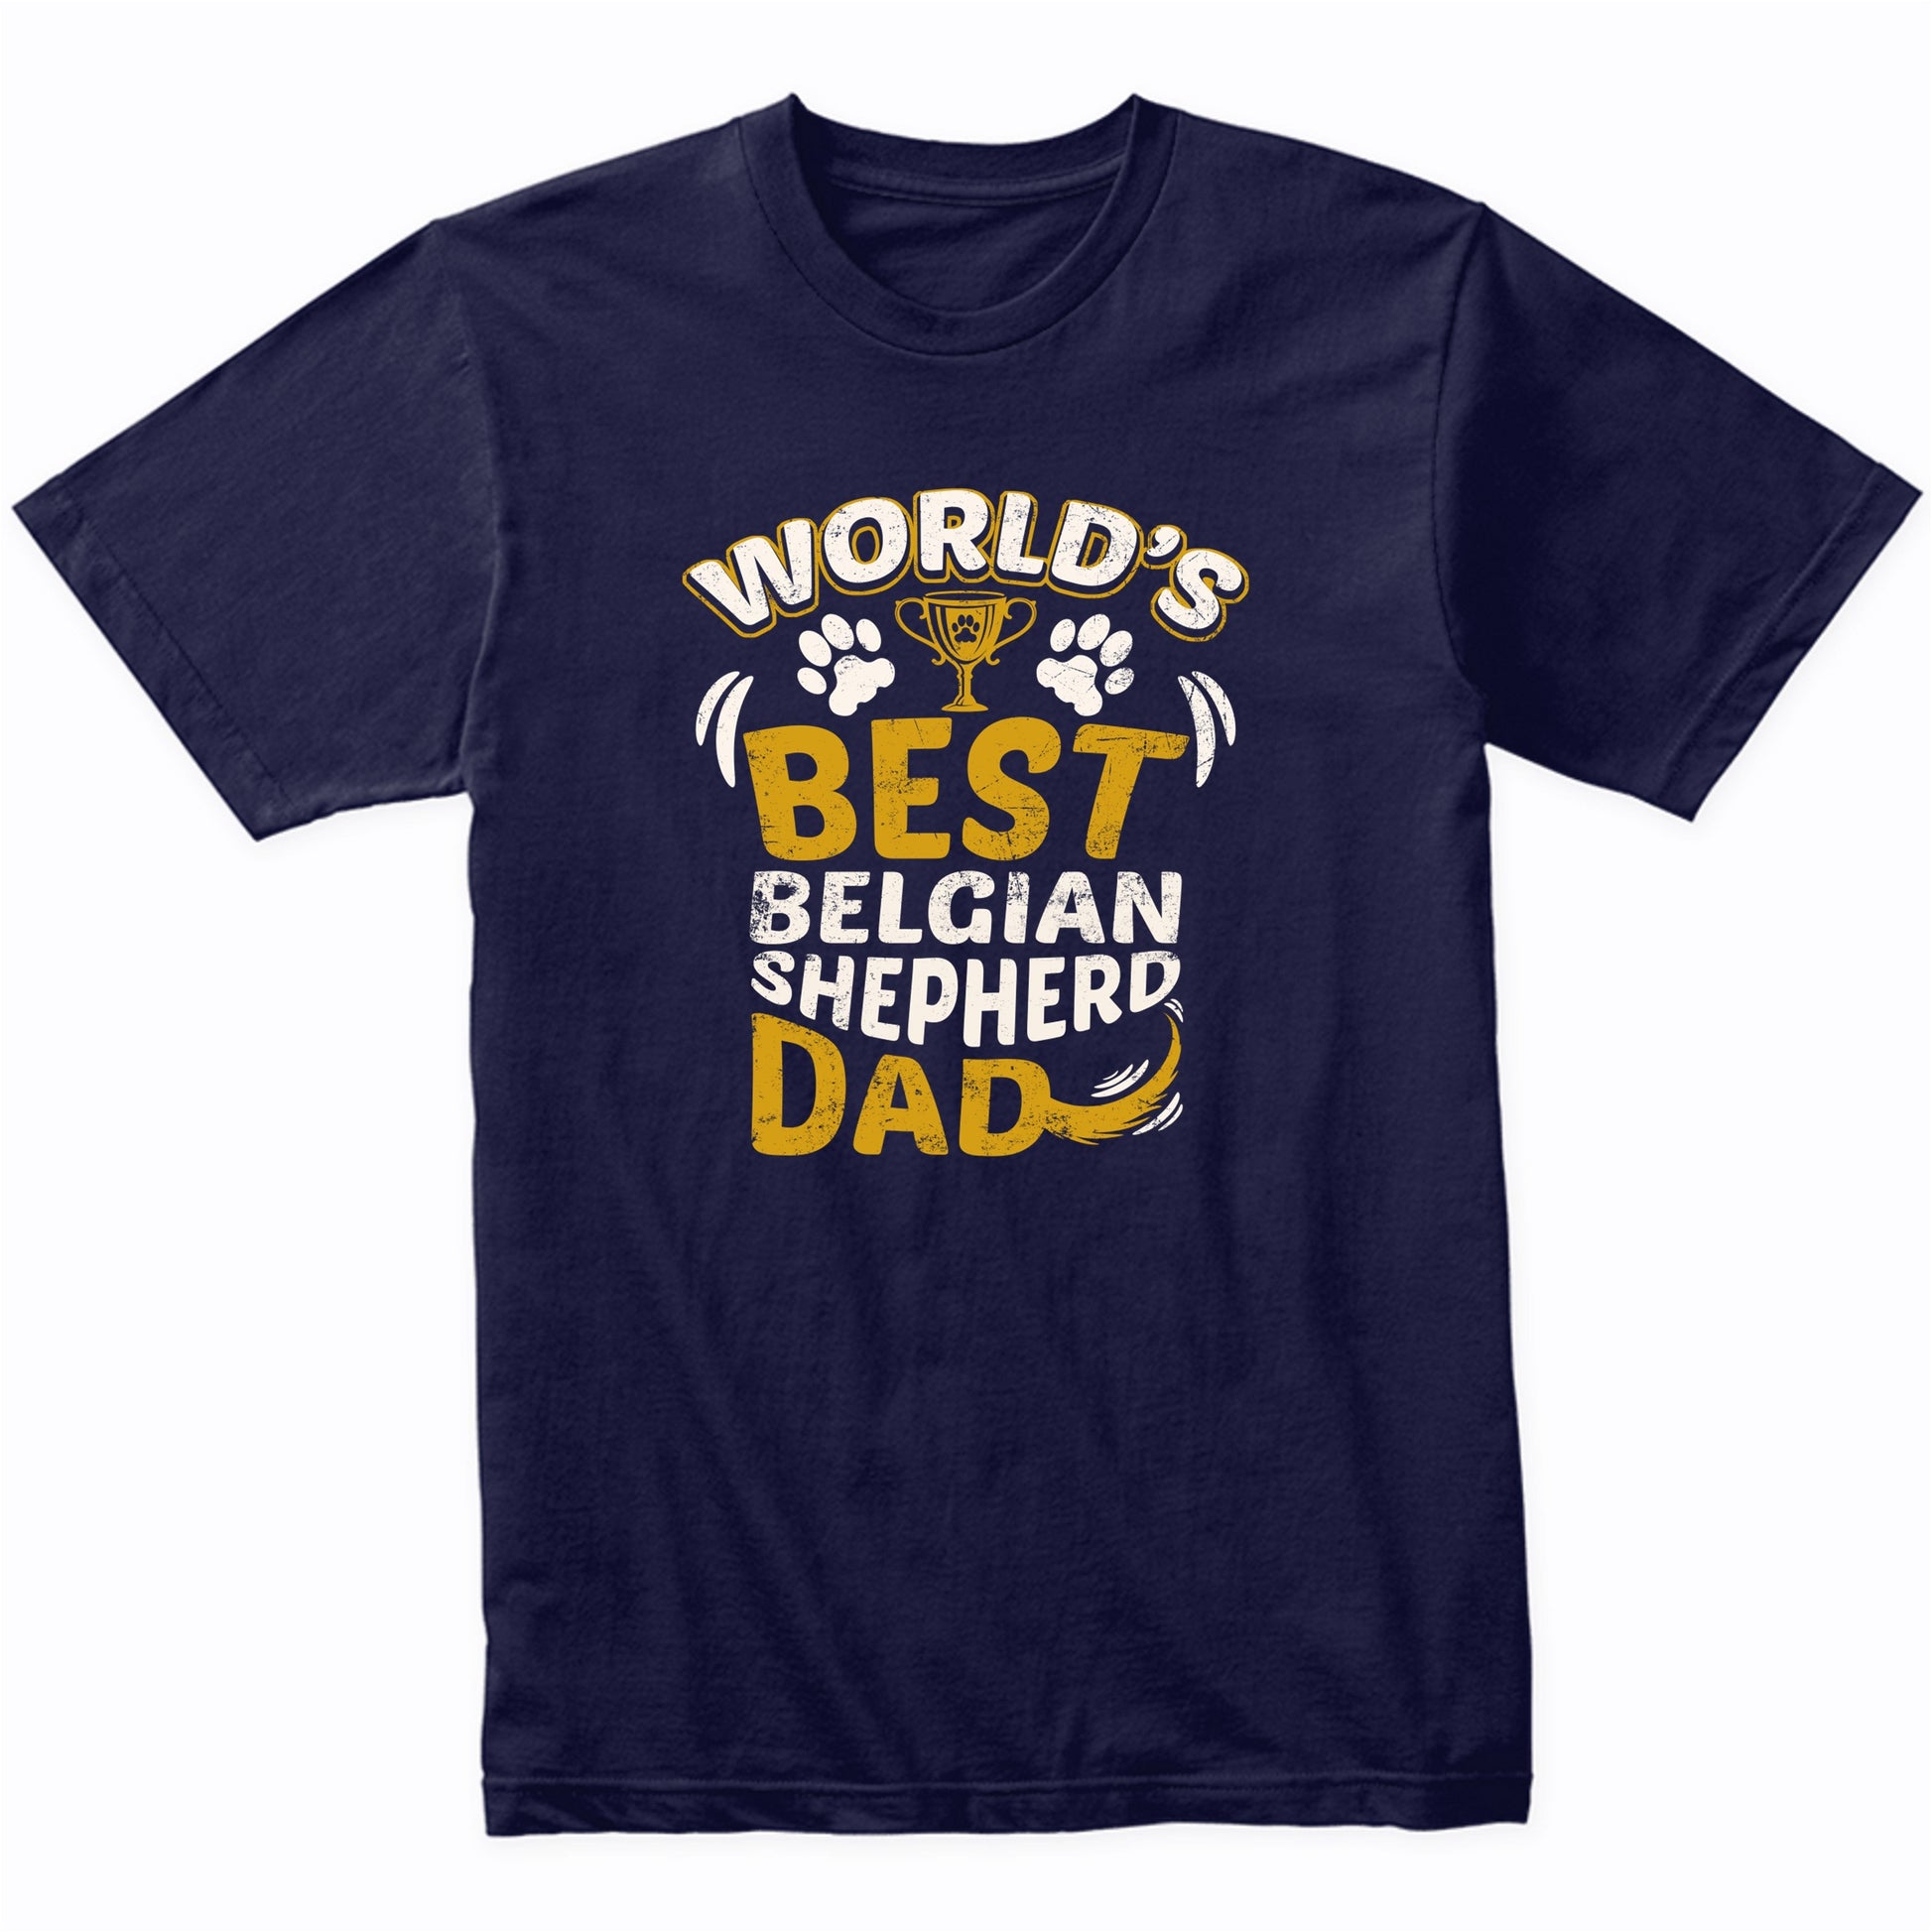 World's Best Belgian Shepherd Dad Graphic T-Shirt